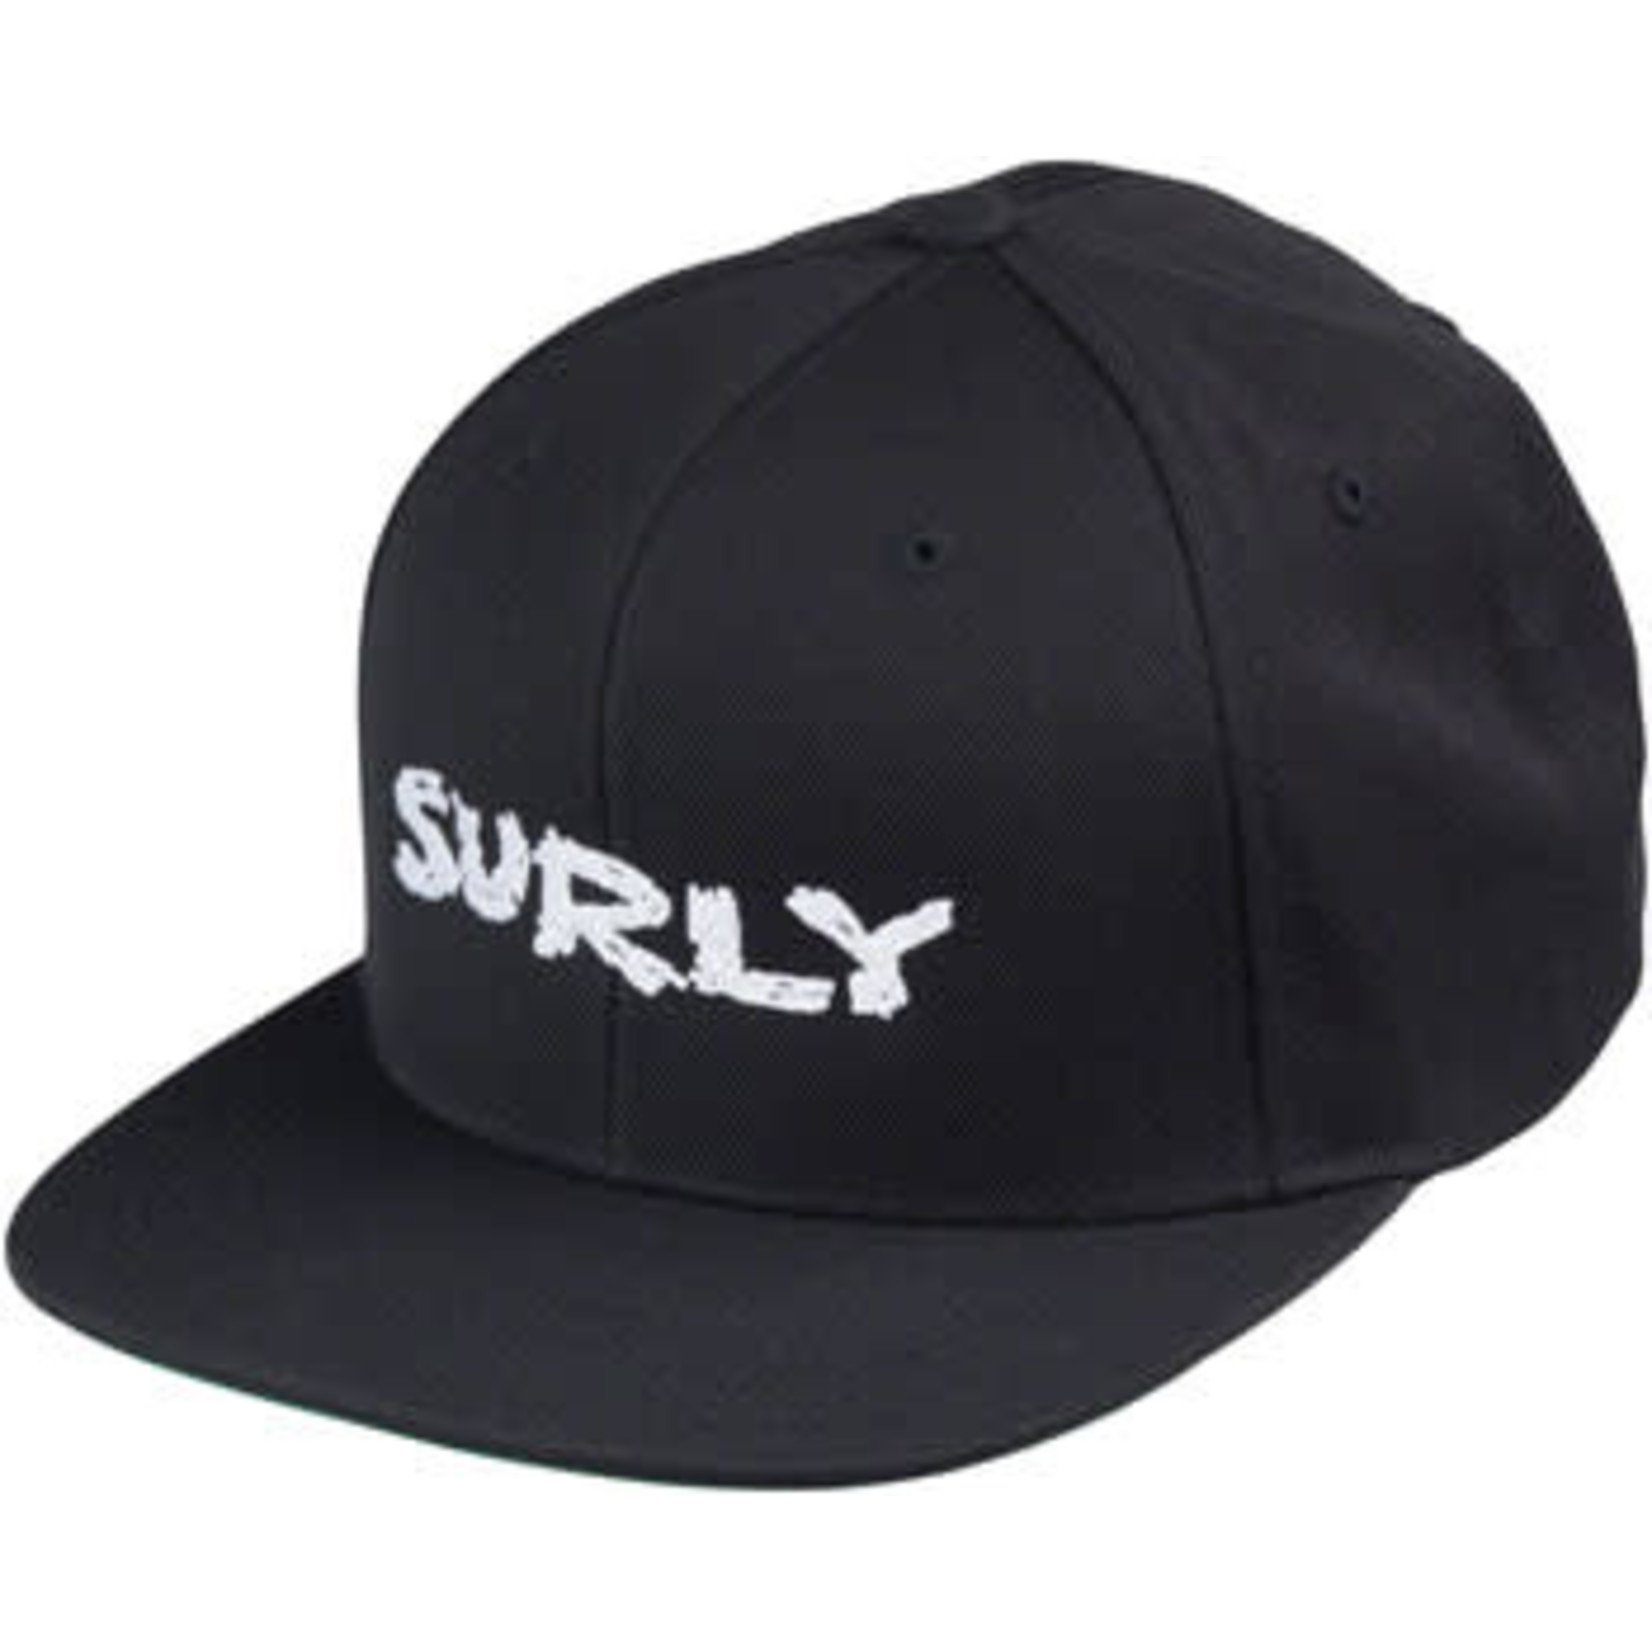 Surly Surly Logo Snapback Cap: Black/White One Size